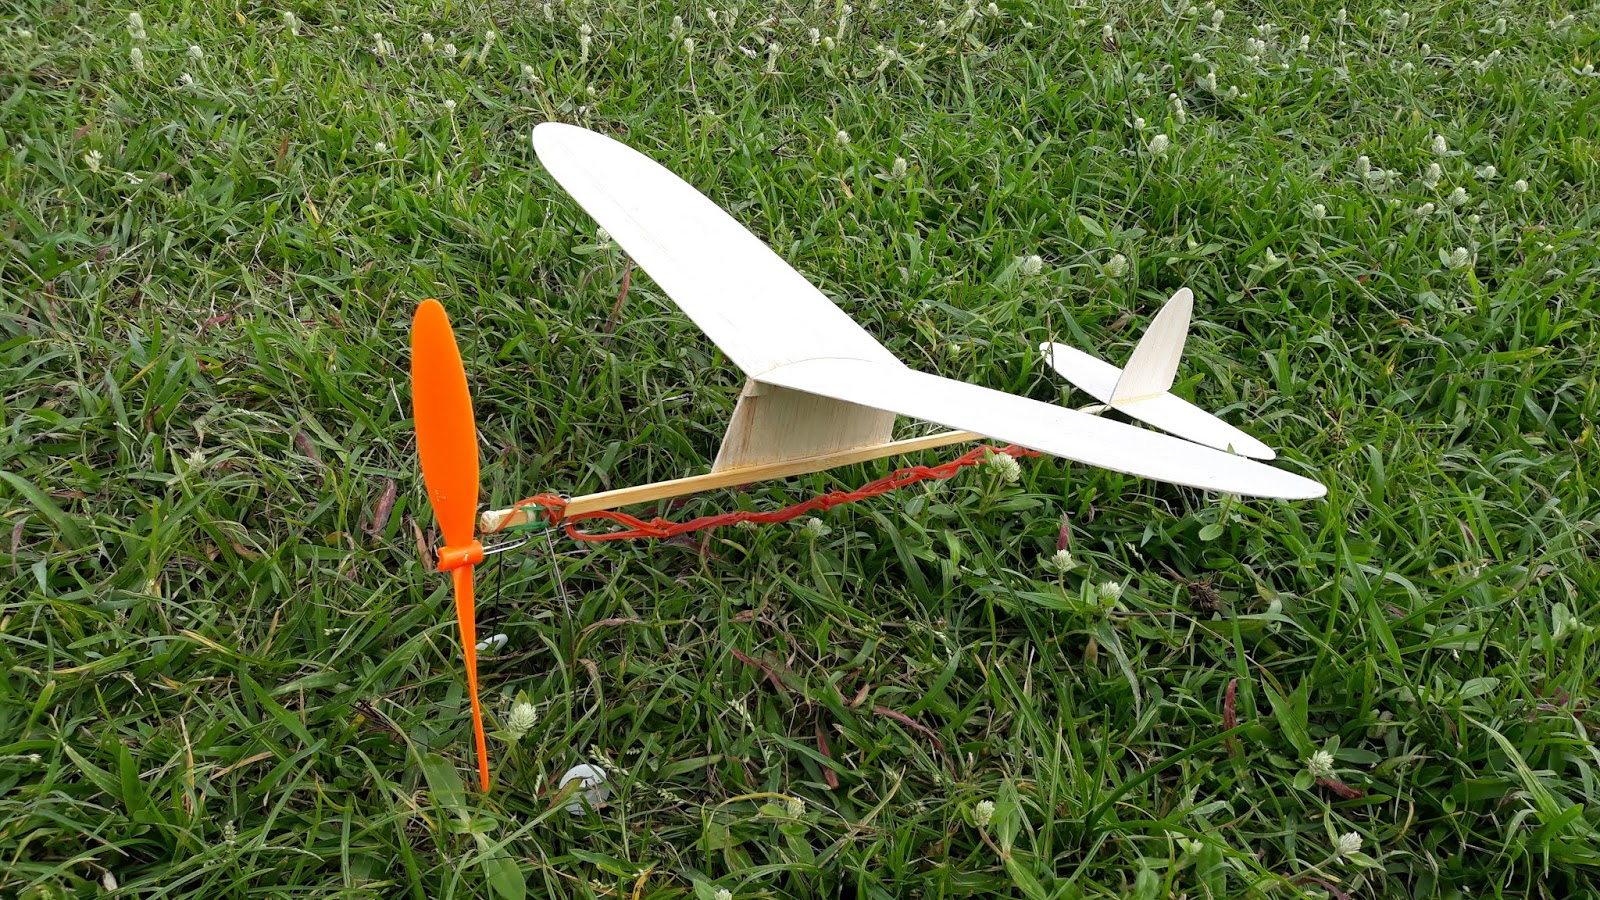 แนะนำอุปกรณ์การสร้าง เครื่องบินบังคับวิทยุ: งานสร้างเครื่องบินยาง ตอนที่ 2